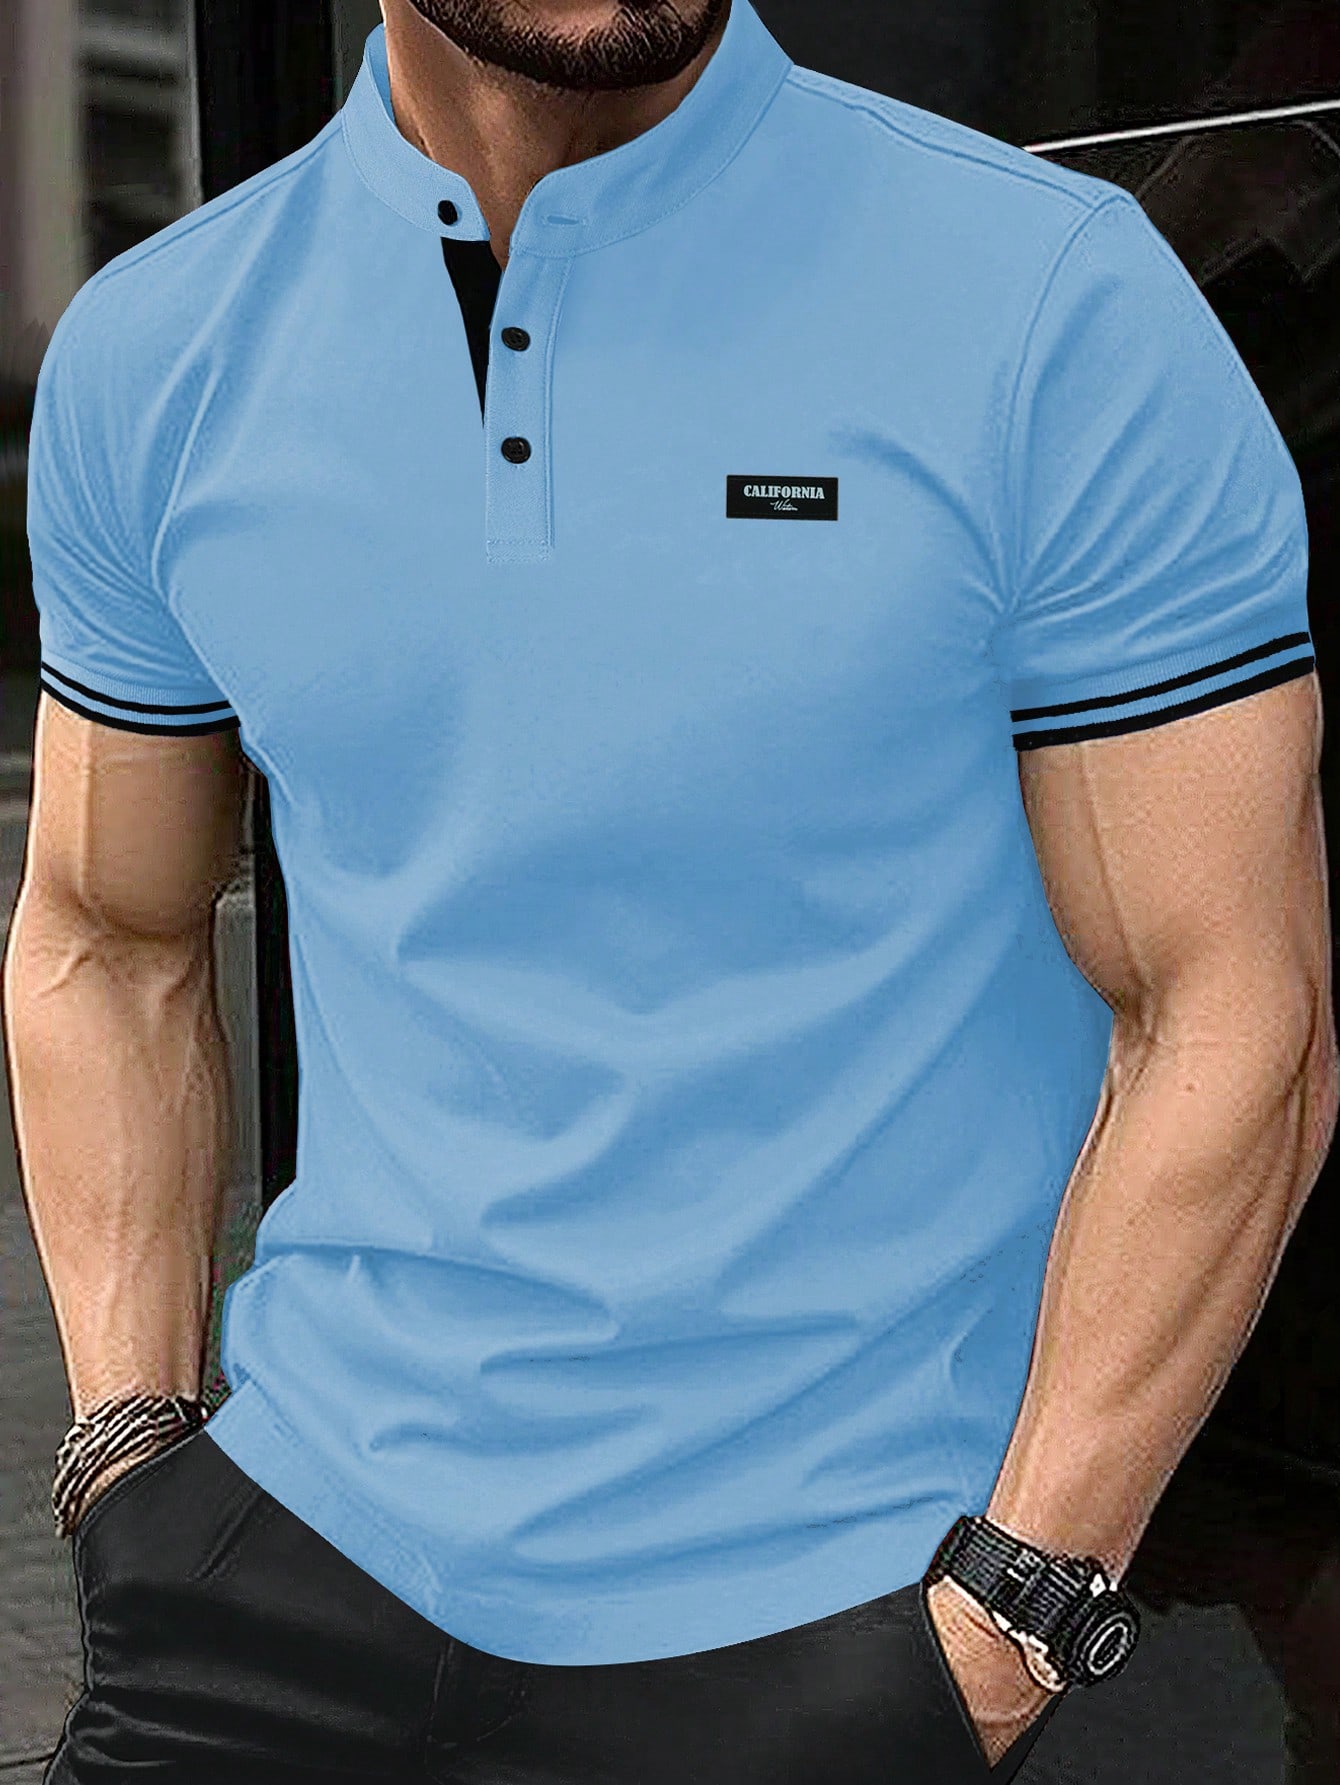 Мужская рубашка-поло с коротким рукавом и планкой на пуговицах Manfinity Homme, синий мусульманская рубашка мужская бронзовая повседневная длинная мужская